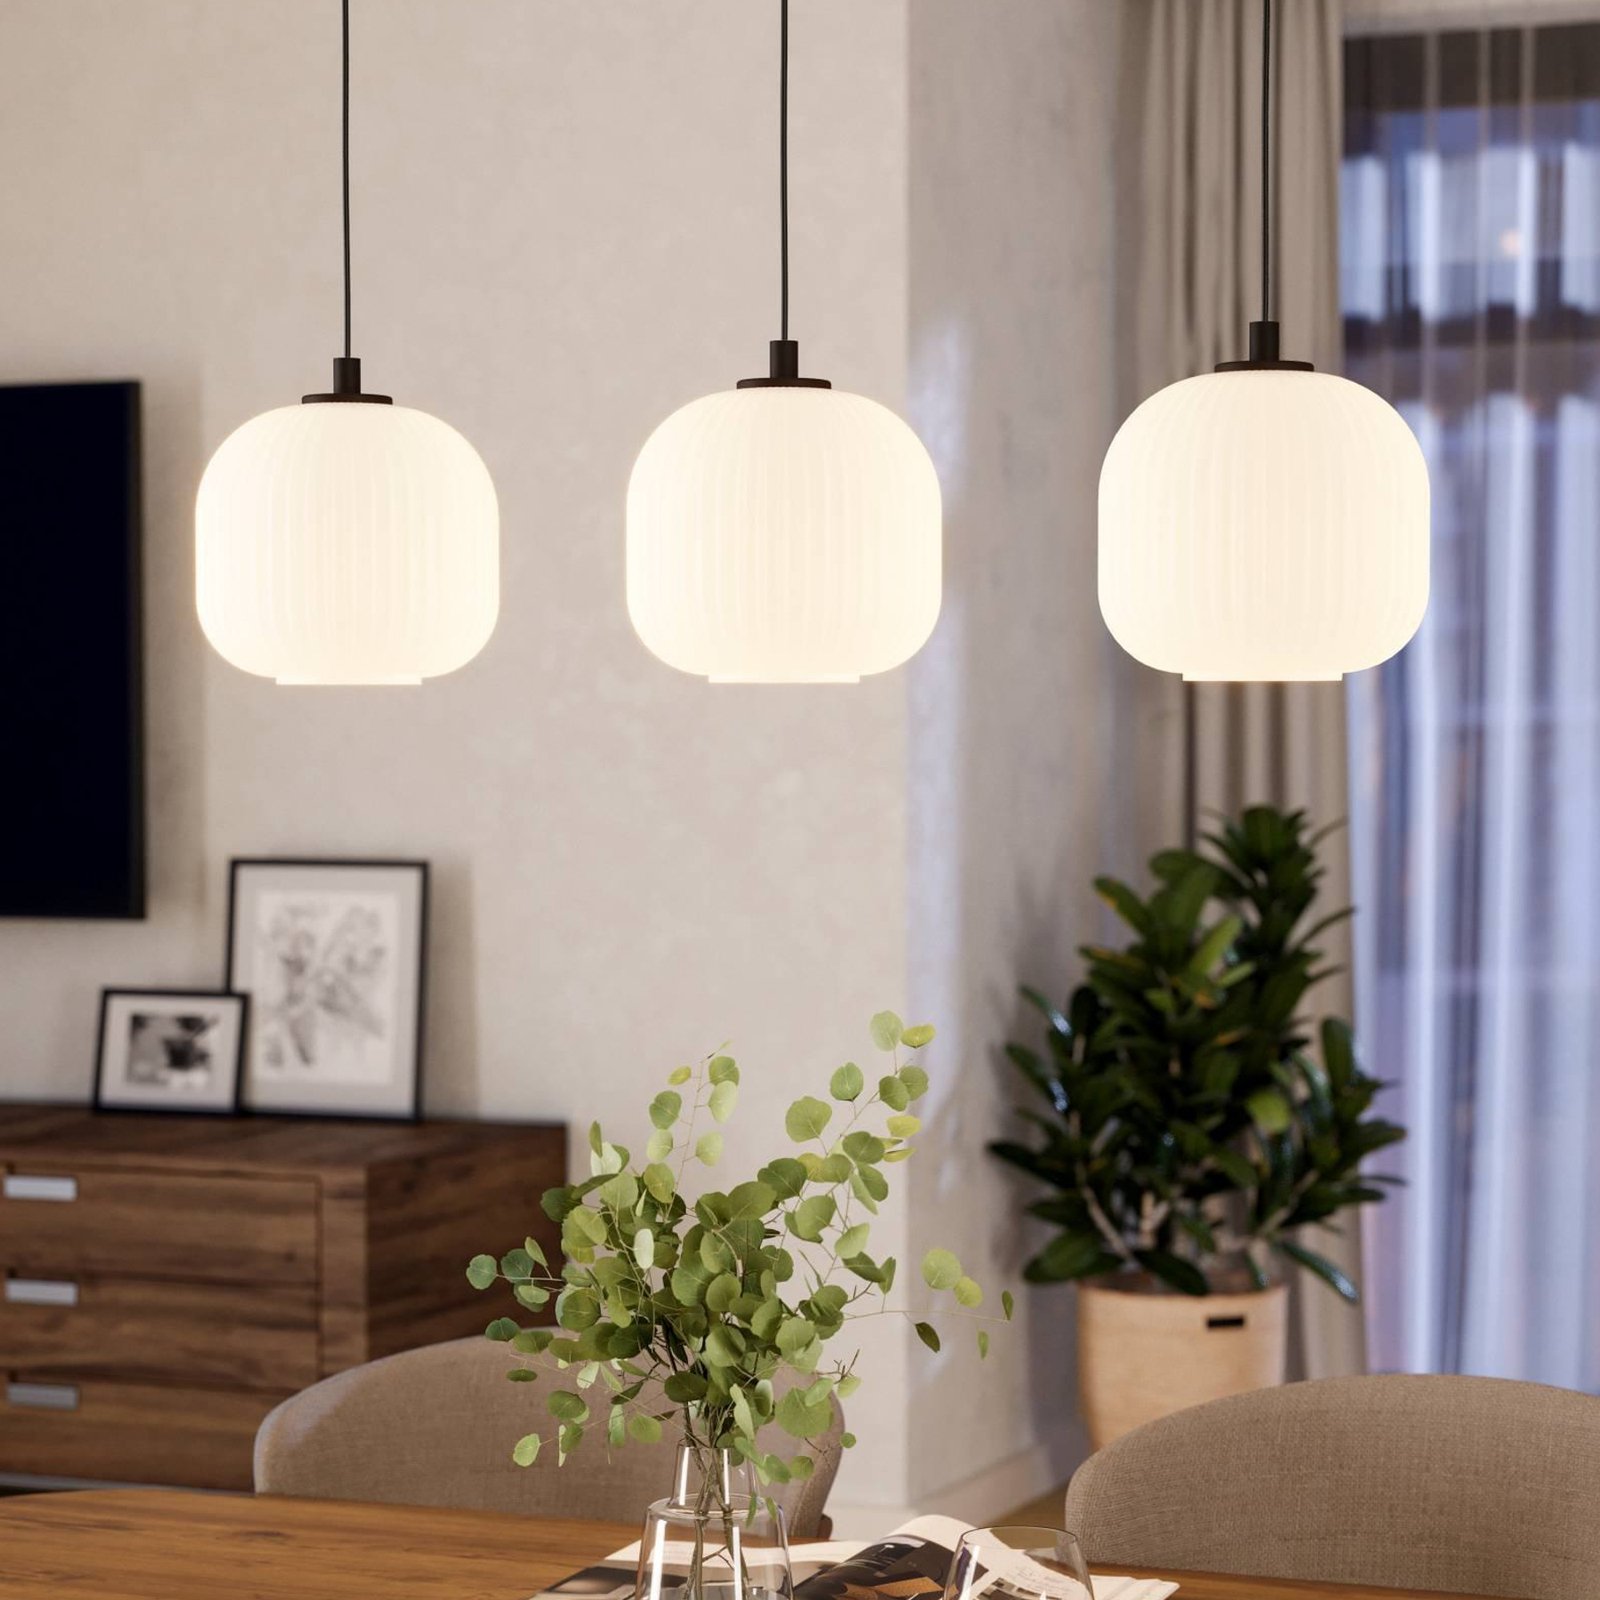 Mantunalle hanglamp, lengte 120 cm, zwart/wit, 3-lamps.